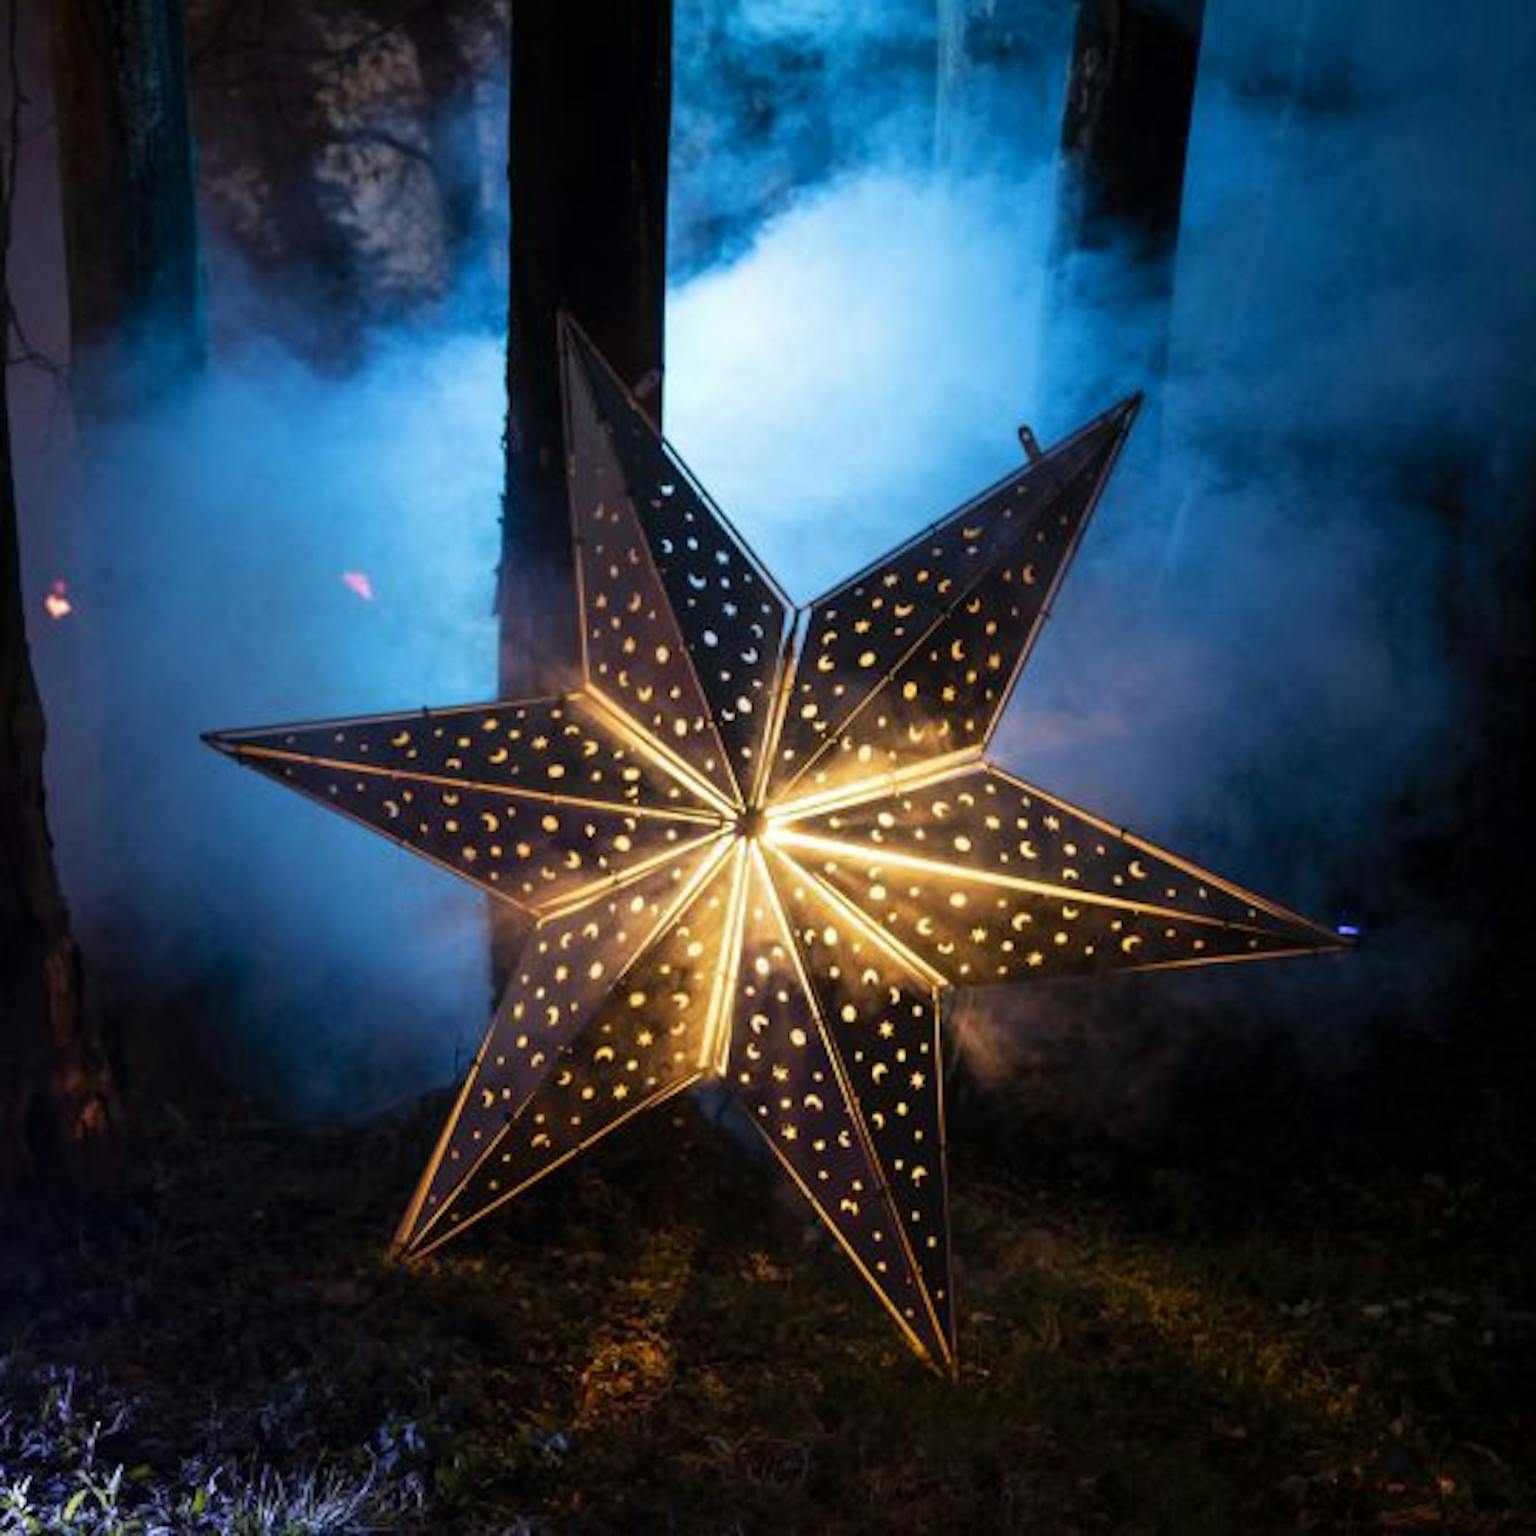 Illuminated star on misty backdrop